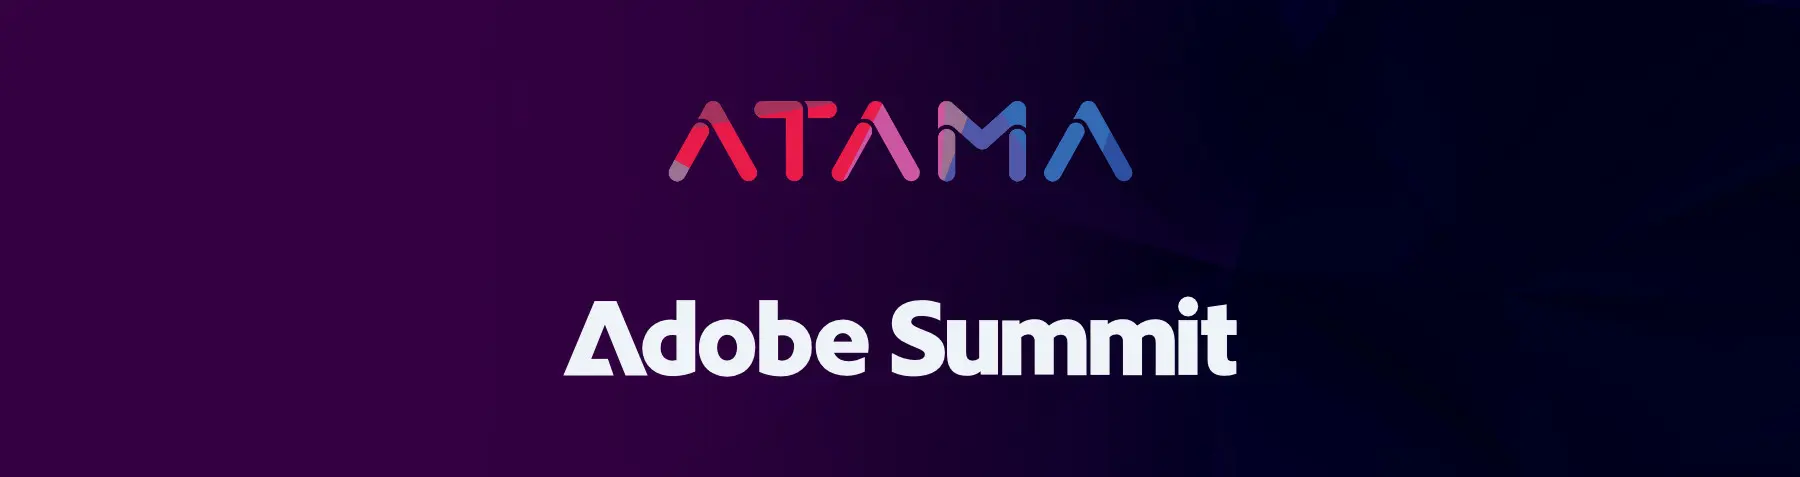 Atama at Adobe Summit